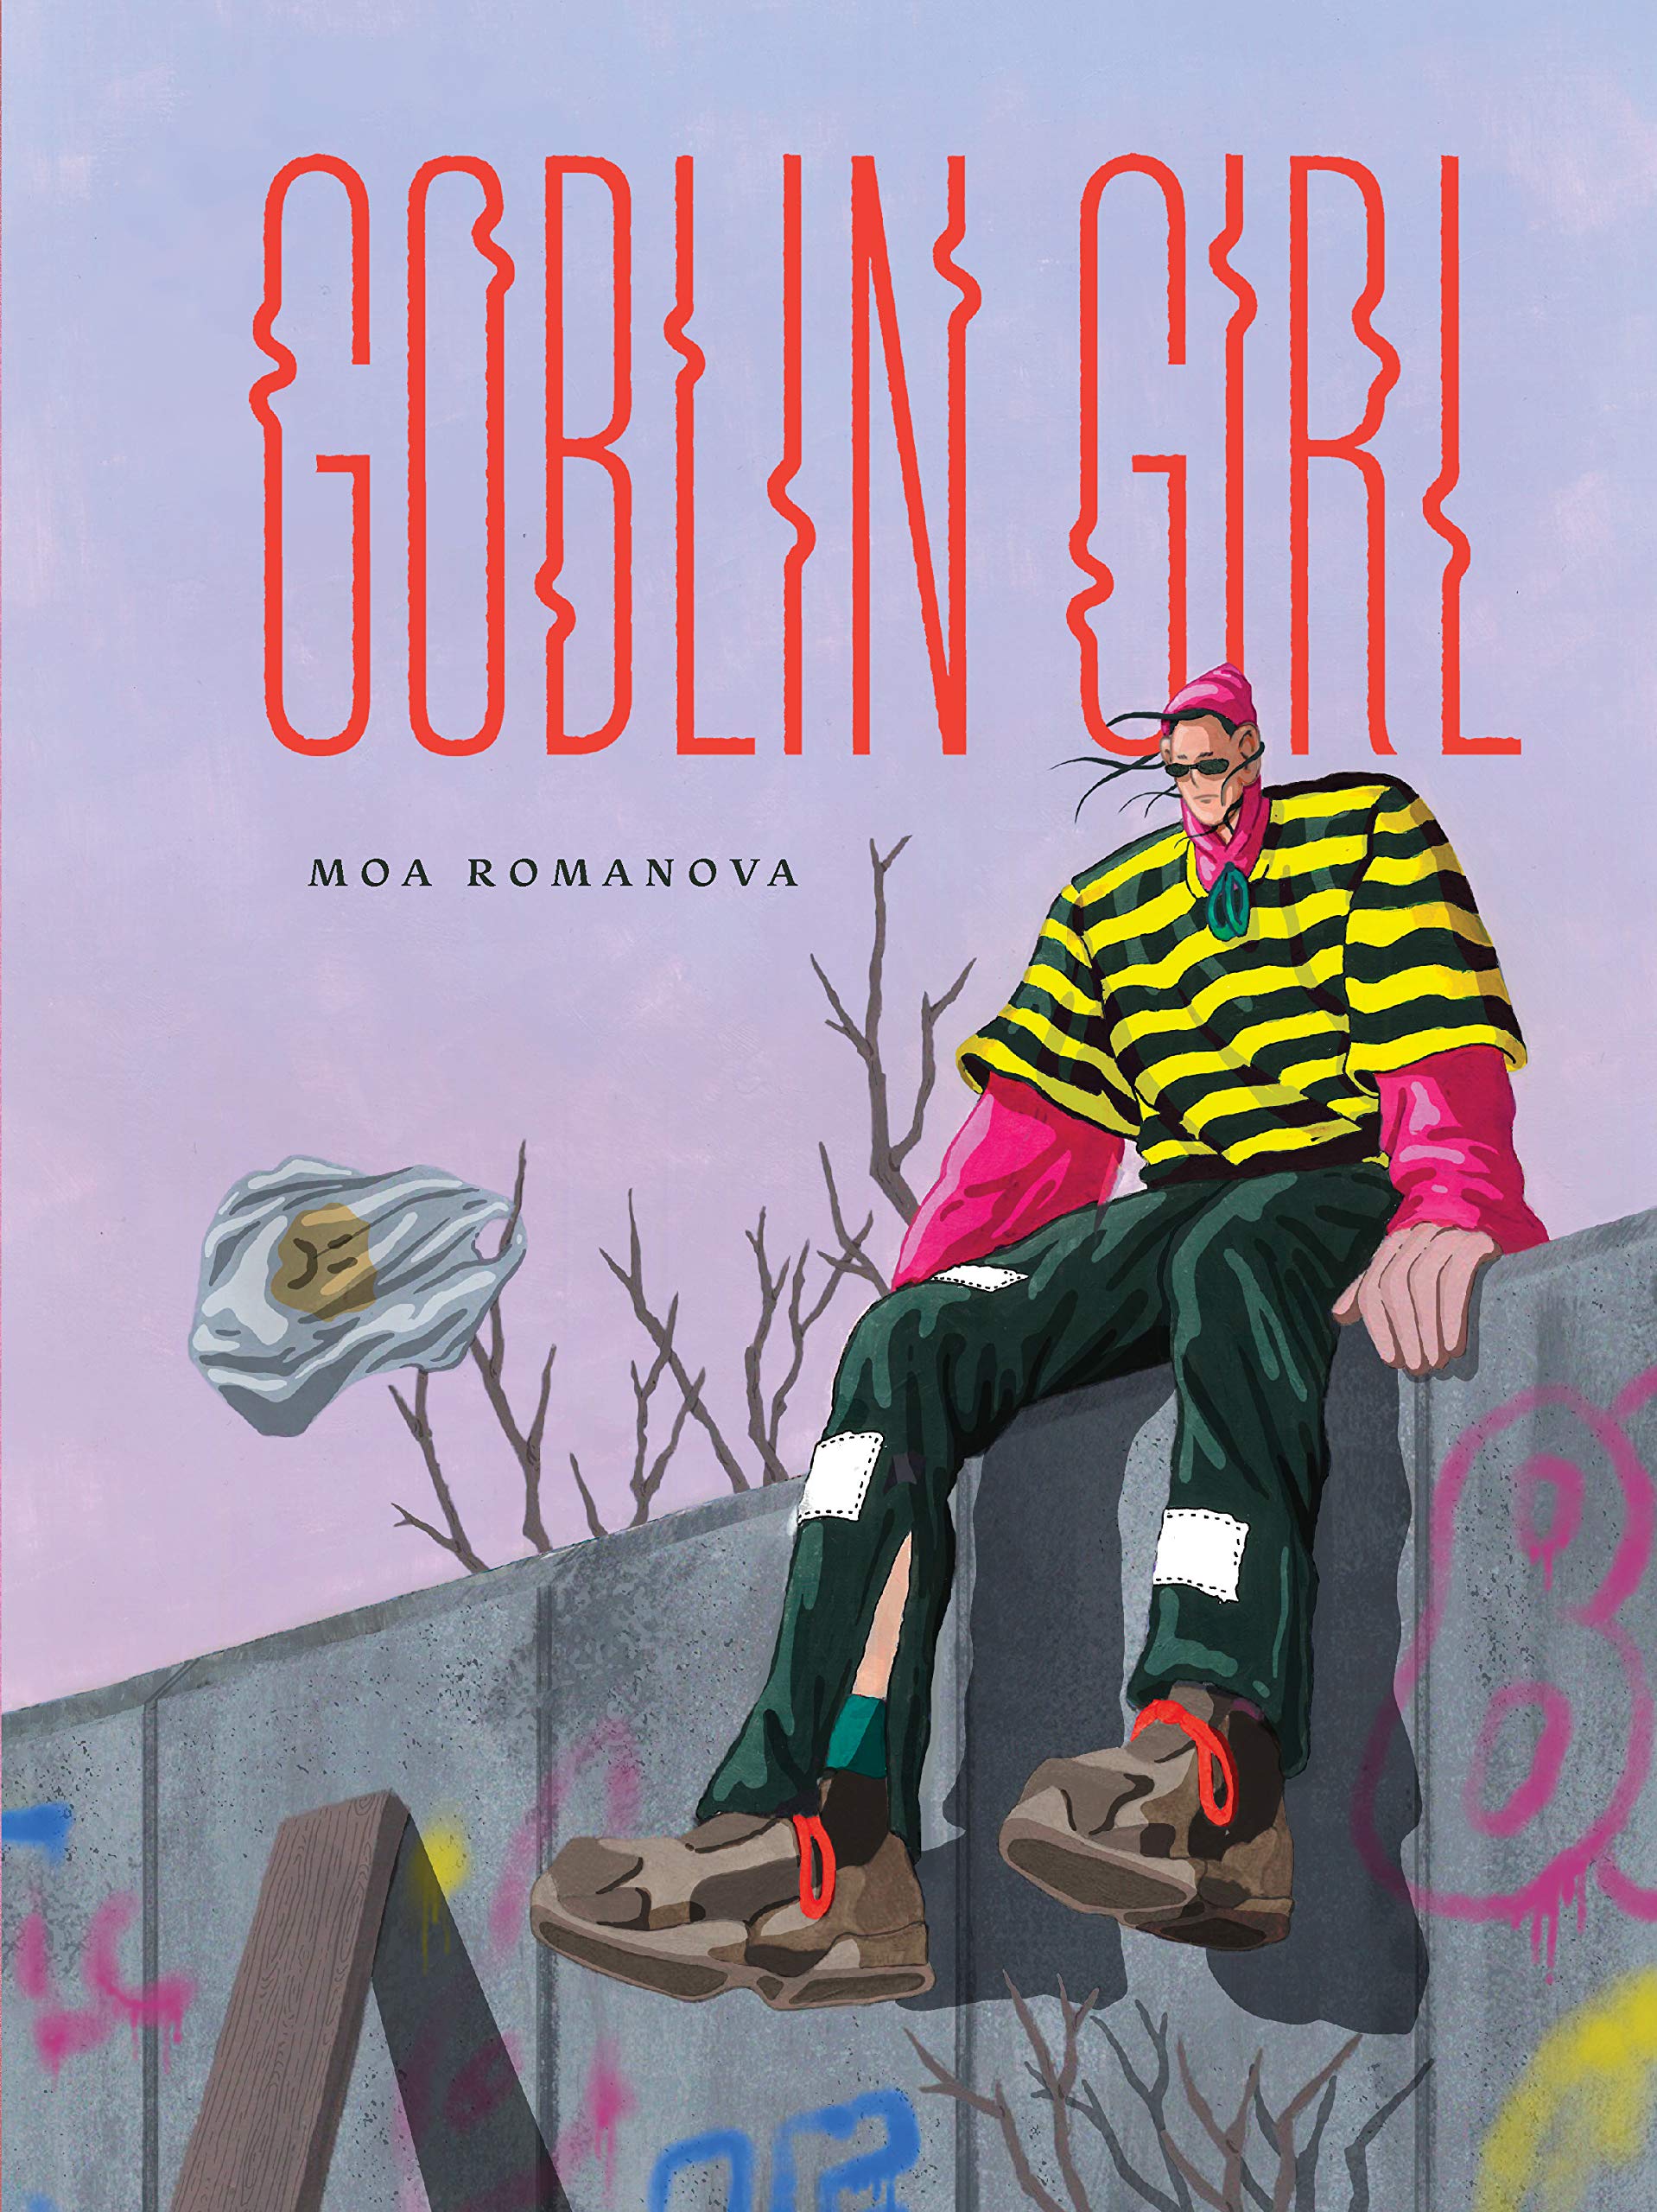 Graphic Novels for Winter 2020: Goblin Girl